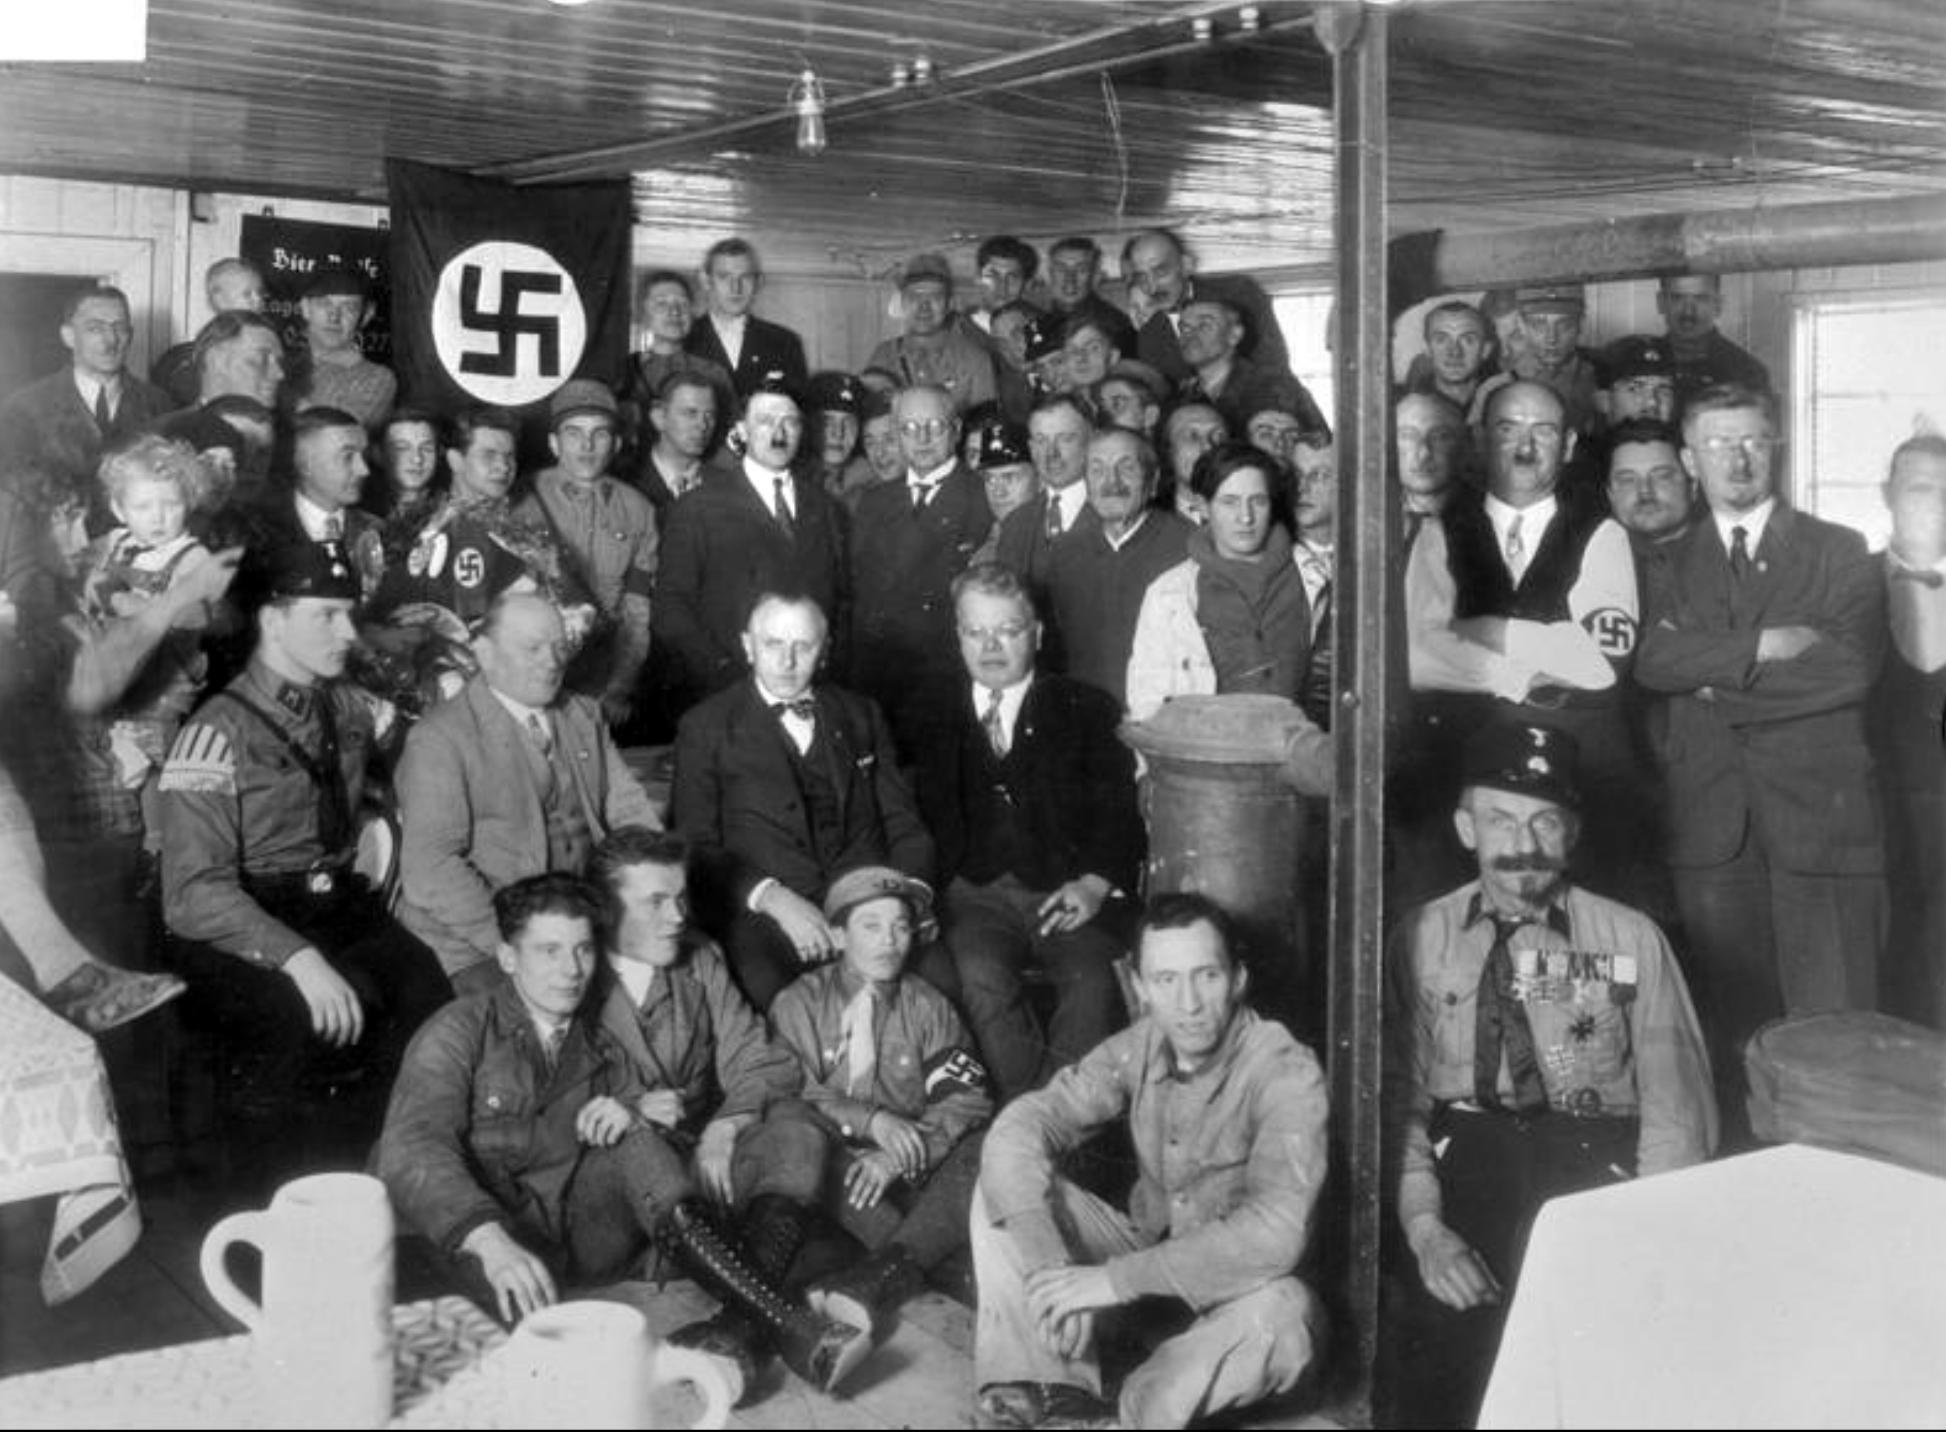 Adolf Hitler a profité de l'antisémitisme et de la crise économique pour favoriser la montée de l'idéologie nazi en Allemagne. © Commons Wikimedia, CC by-sa 3.0